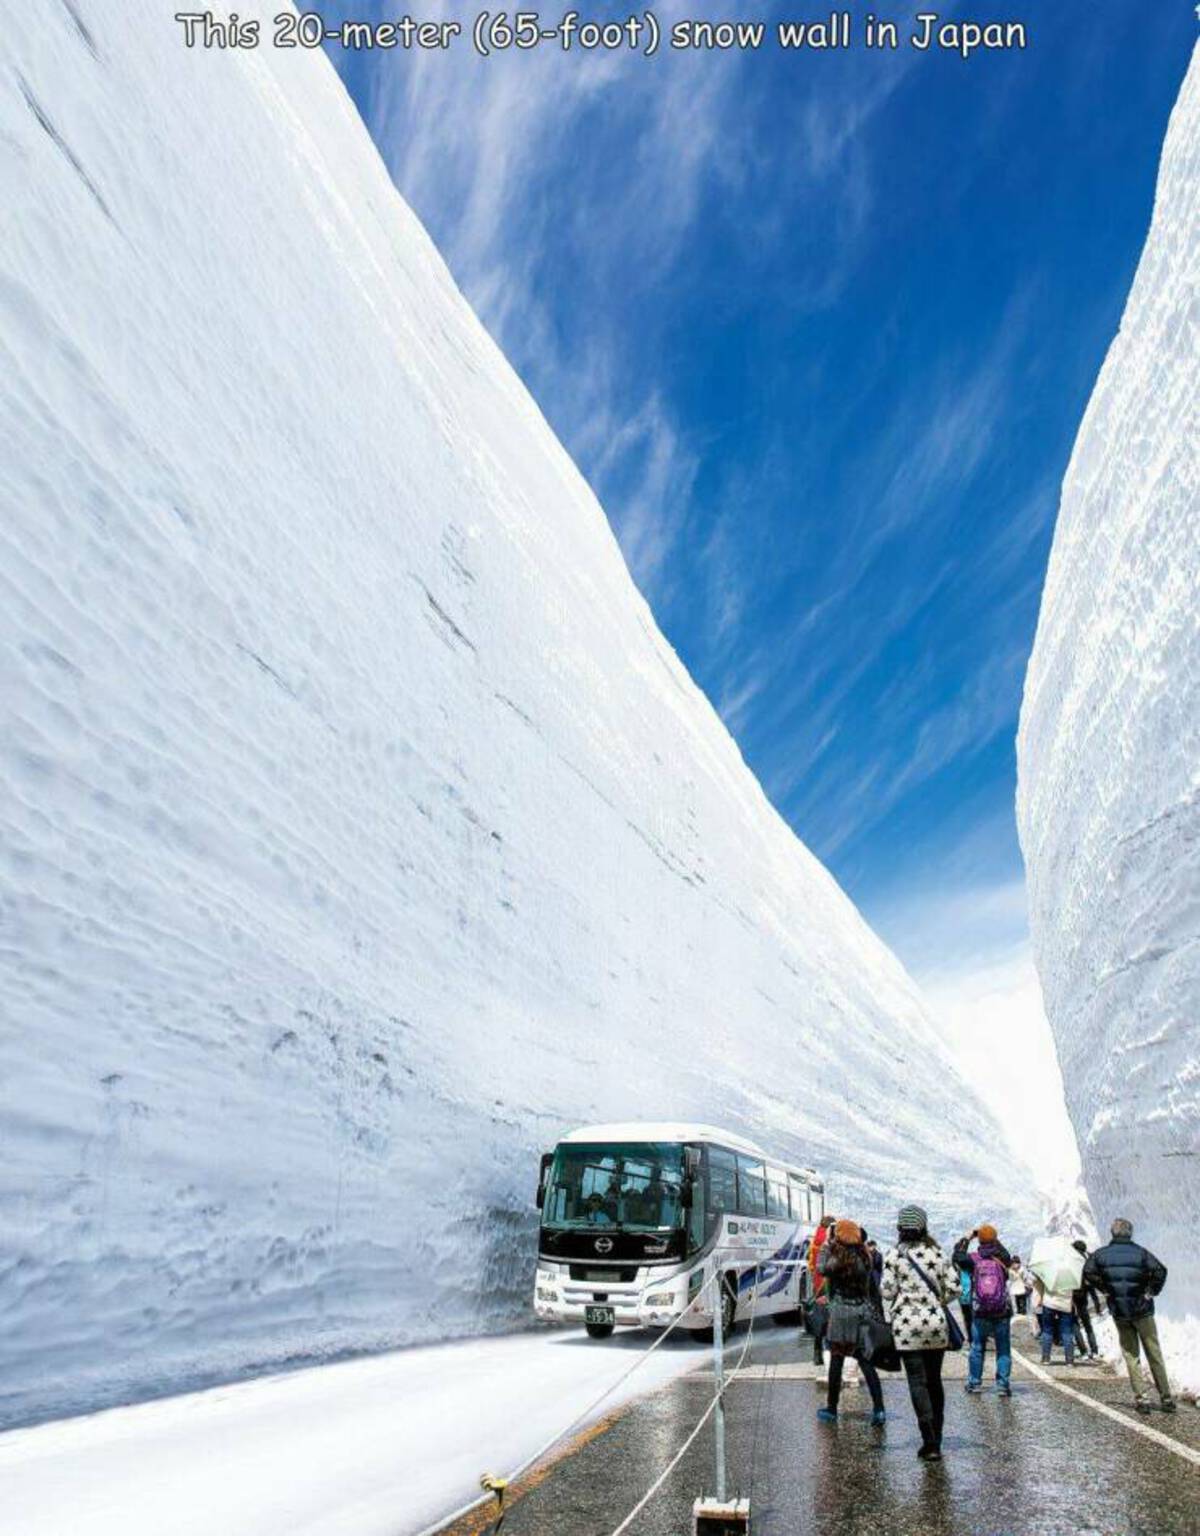 chūbu-sangaku national park - This 20meter 65foot snow wall in Japan Tis Baku